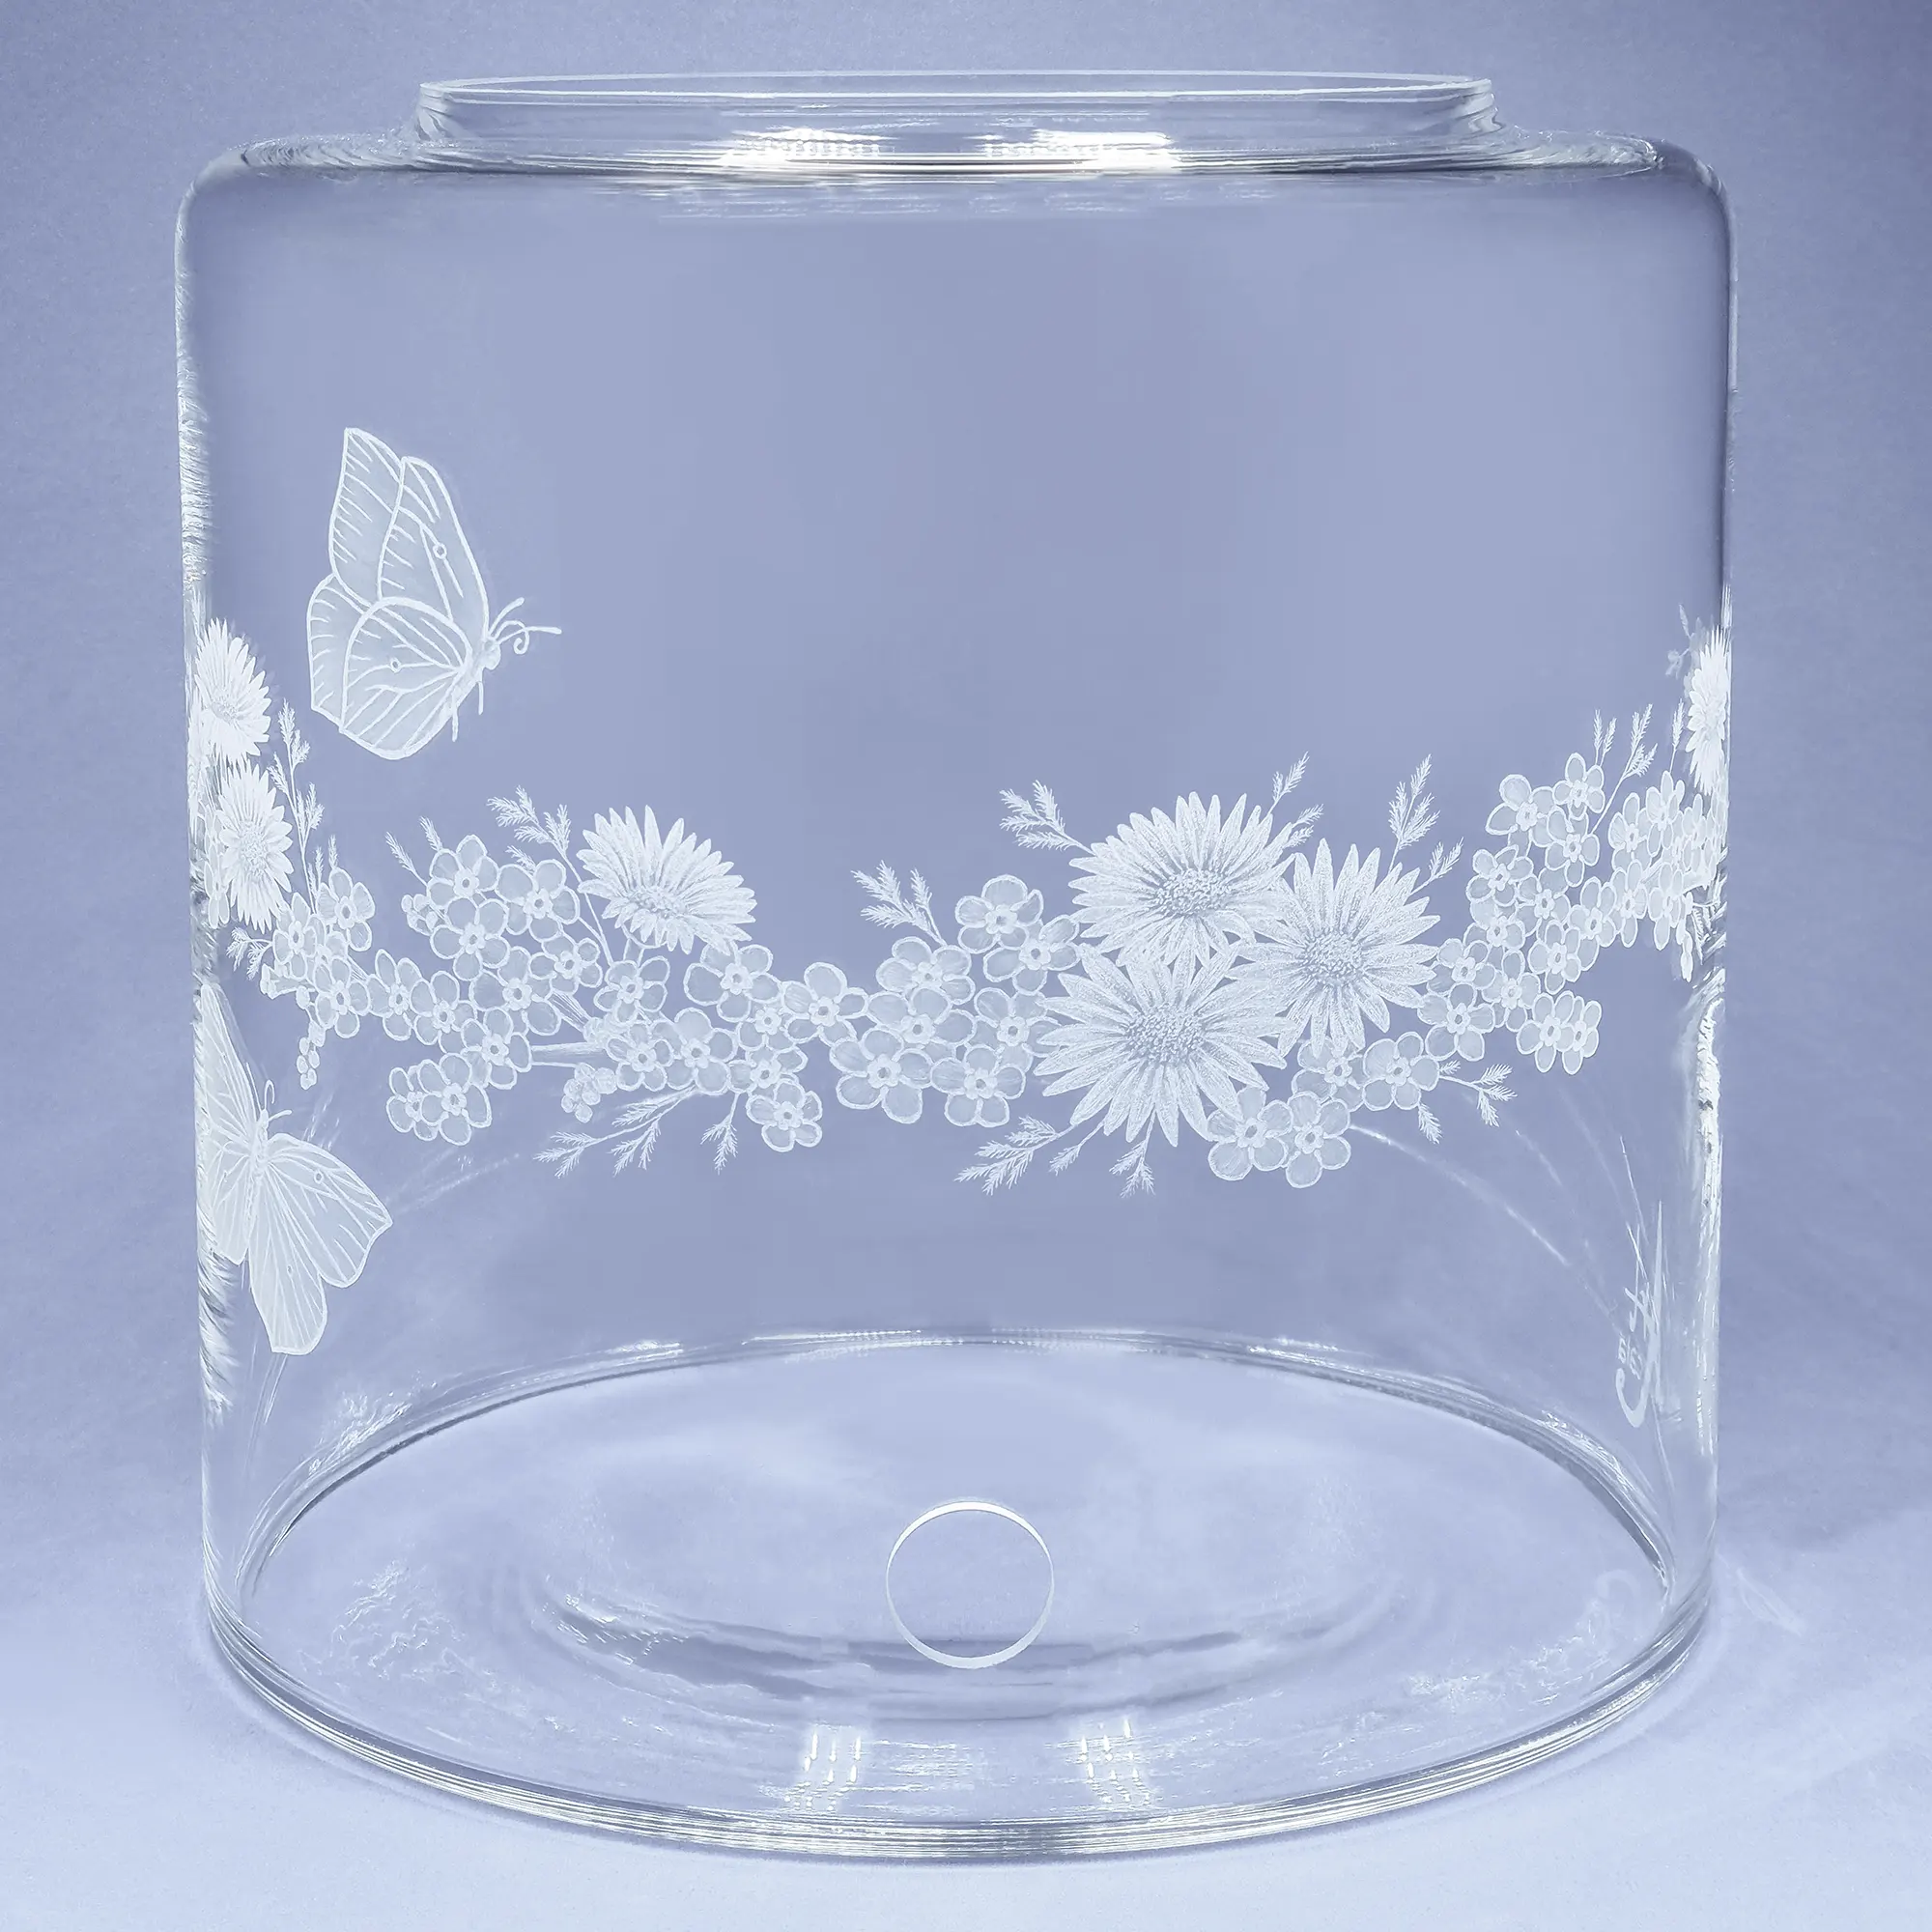 Vorratstank aus Glas für einen Acala Wasserfilter in klarem Glas mit dem gravierten Kranz,umlaufende um das runde Glas.In dem Granz sind Vergissmeinnicht, Schmetterlinge und Gänseblümchen.Vorderansicht.